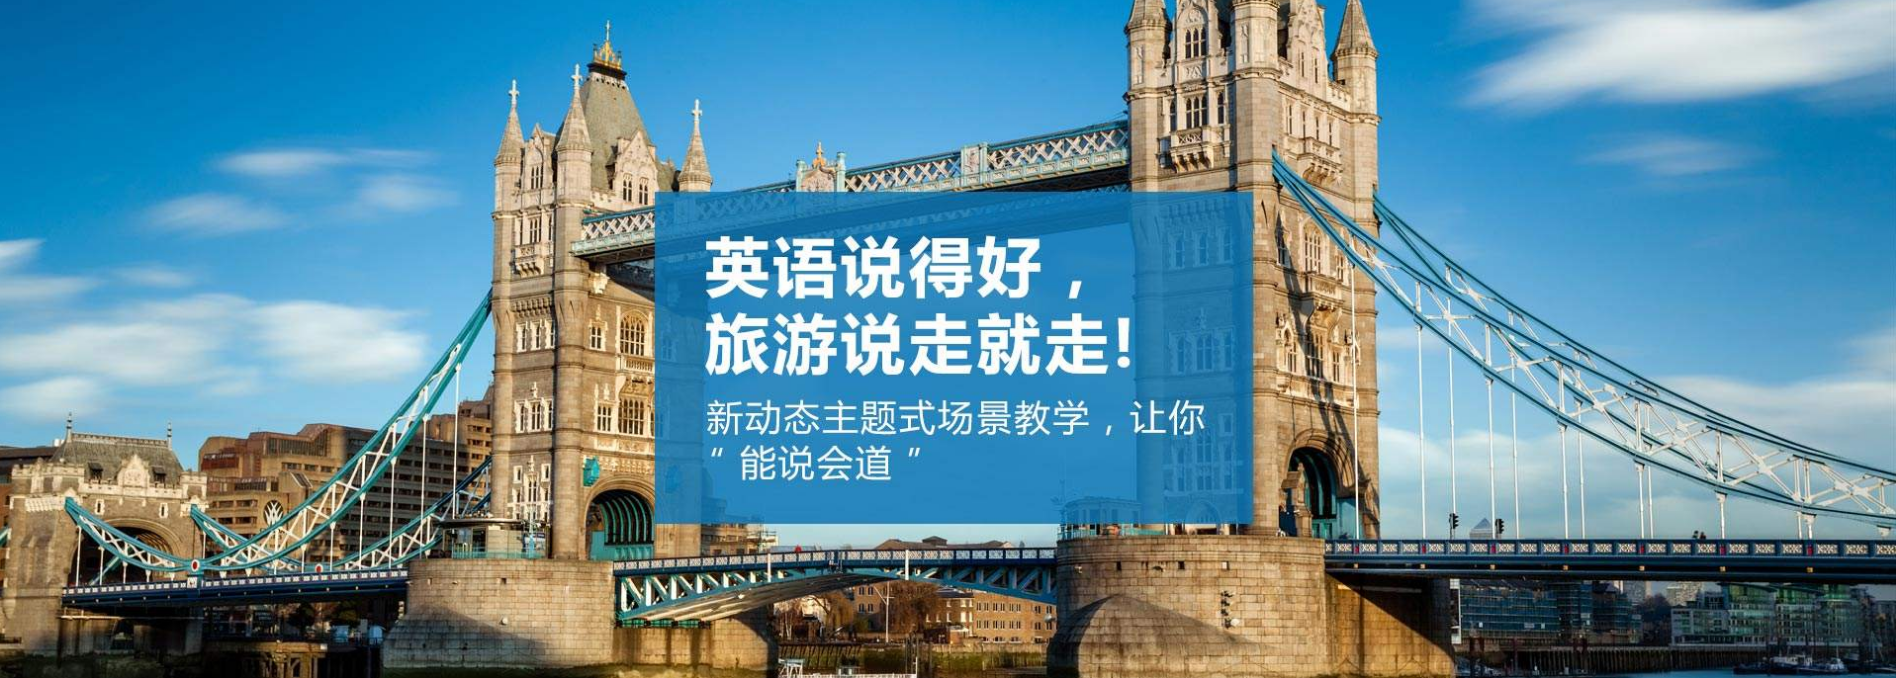 武汉旅游英语口语培训课程